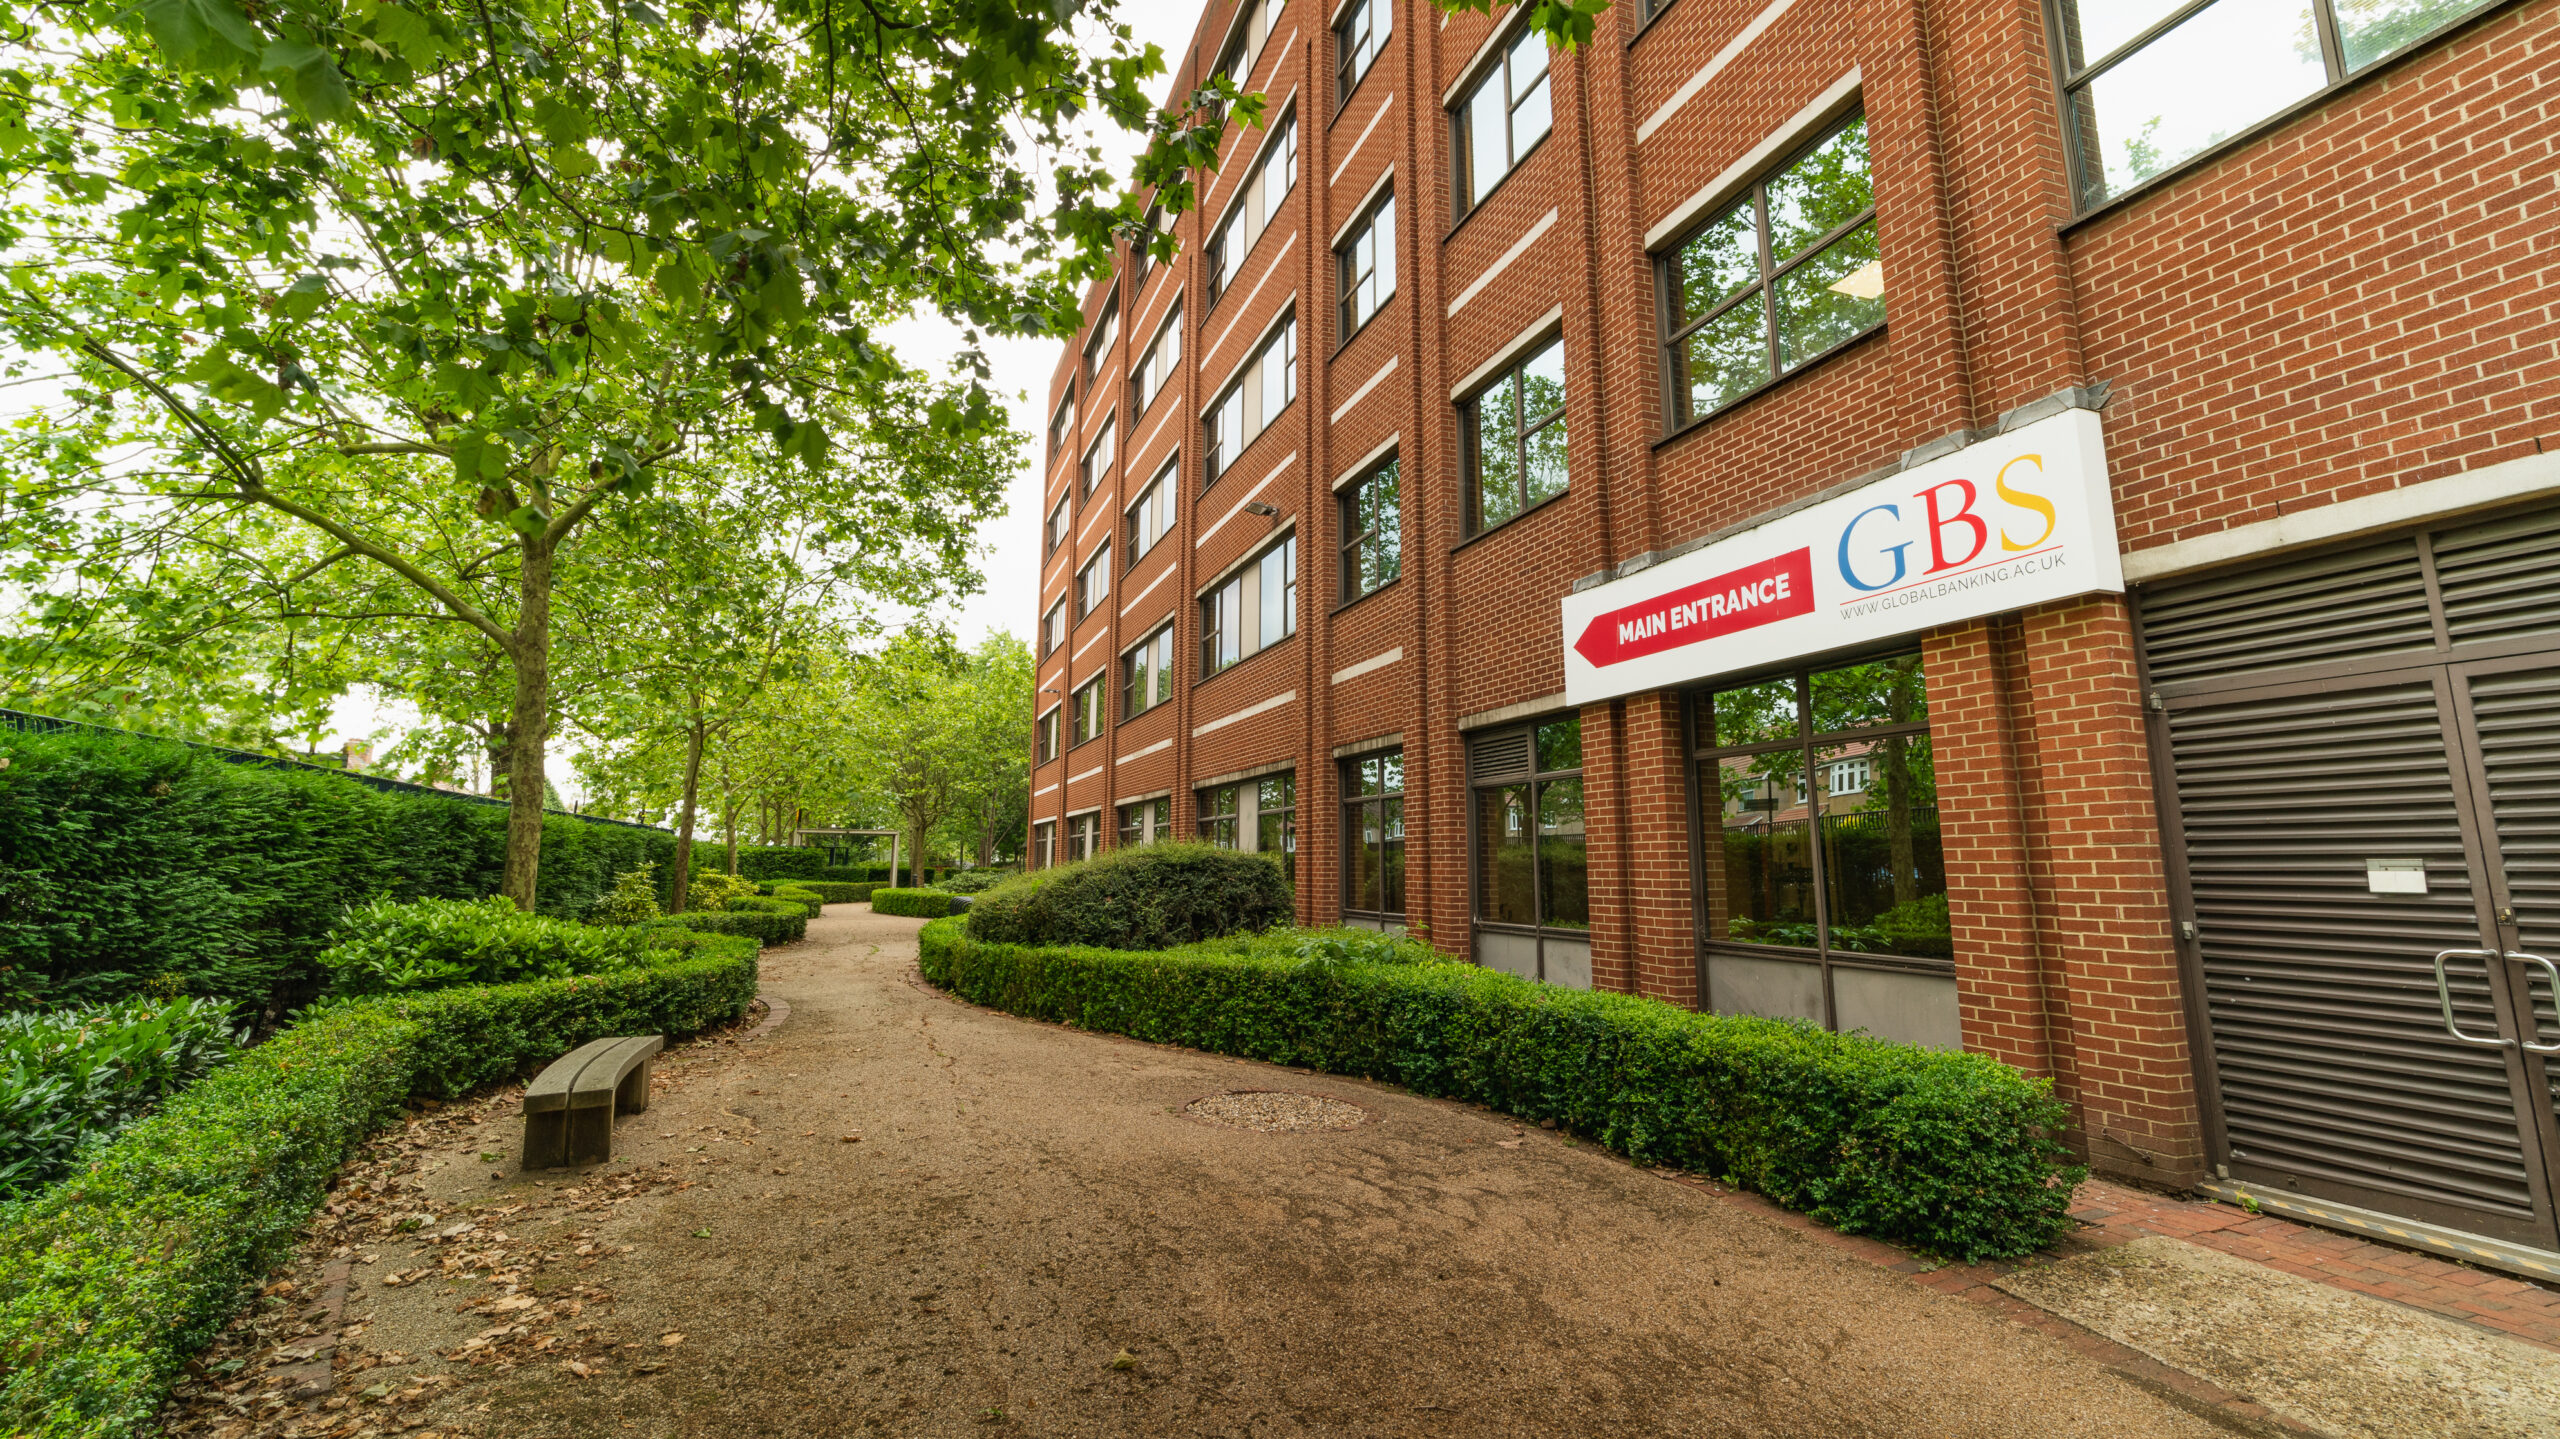 Global Banking School UK